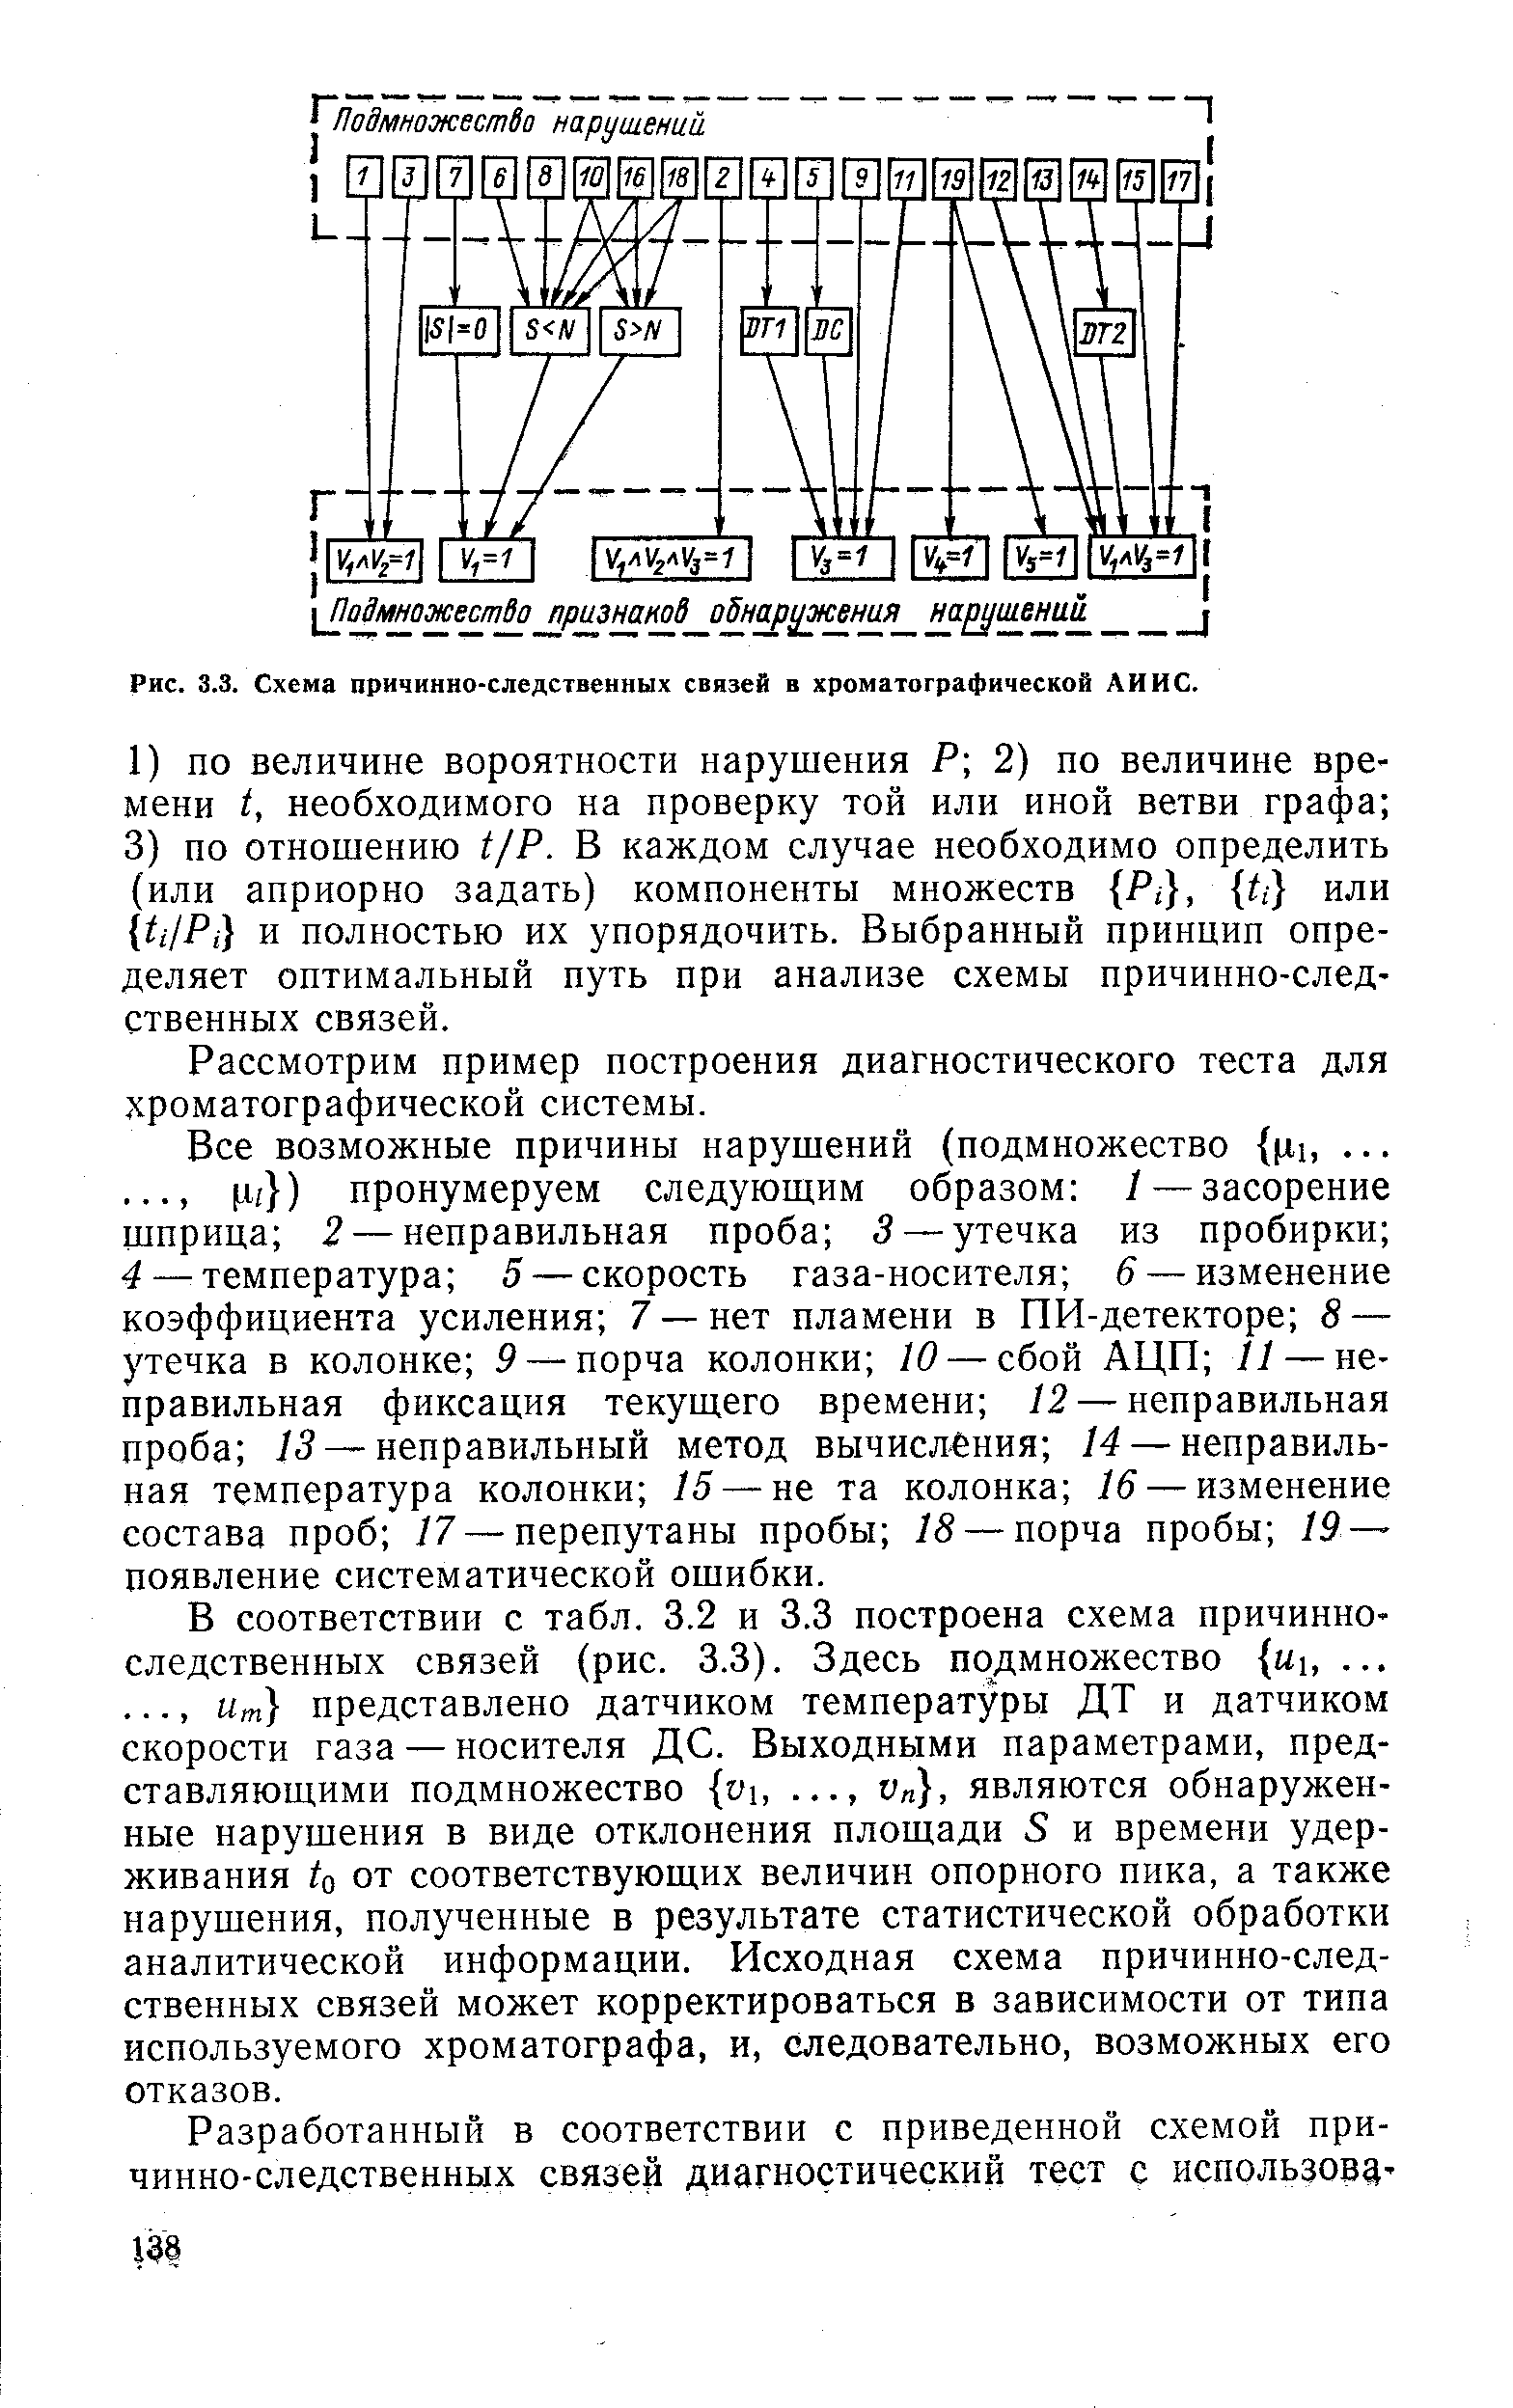 Рис. 3.3. Схема причинно-следственных связей в хроматографической ЛИИС.
